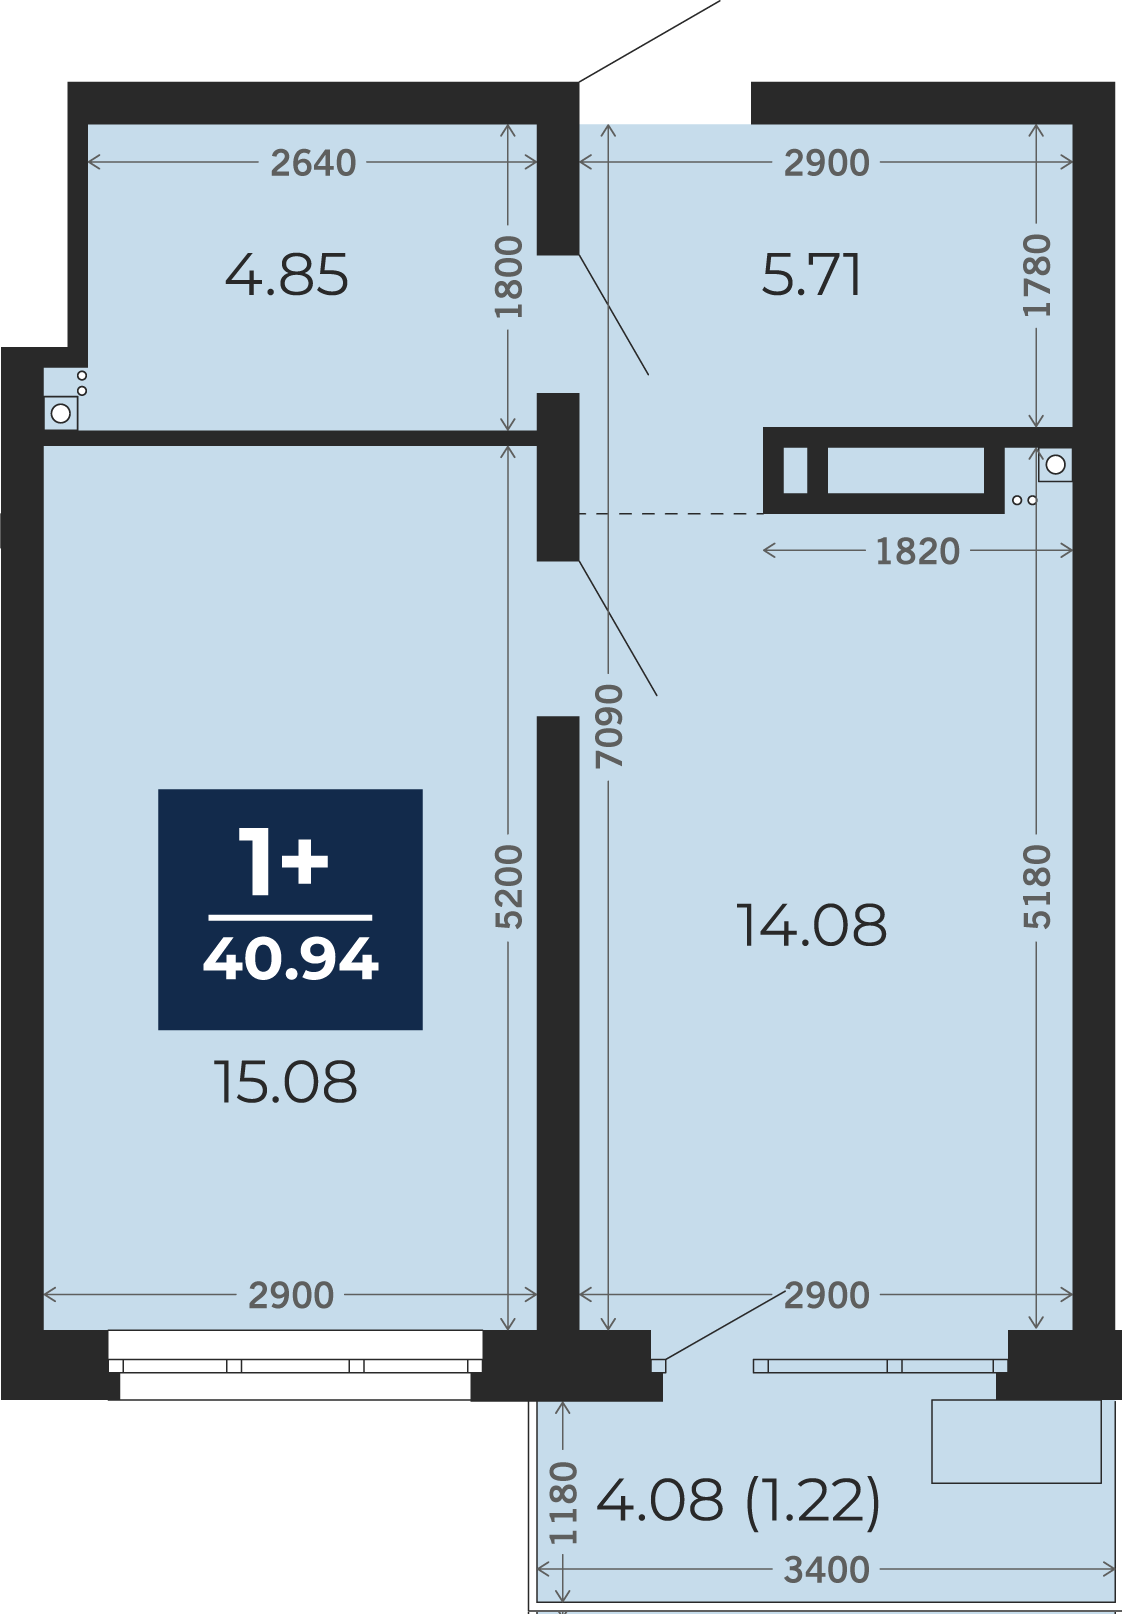 Квартира № 186, 1-комнатная, 40.94 кв. м, 13 этаж